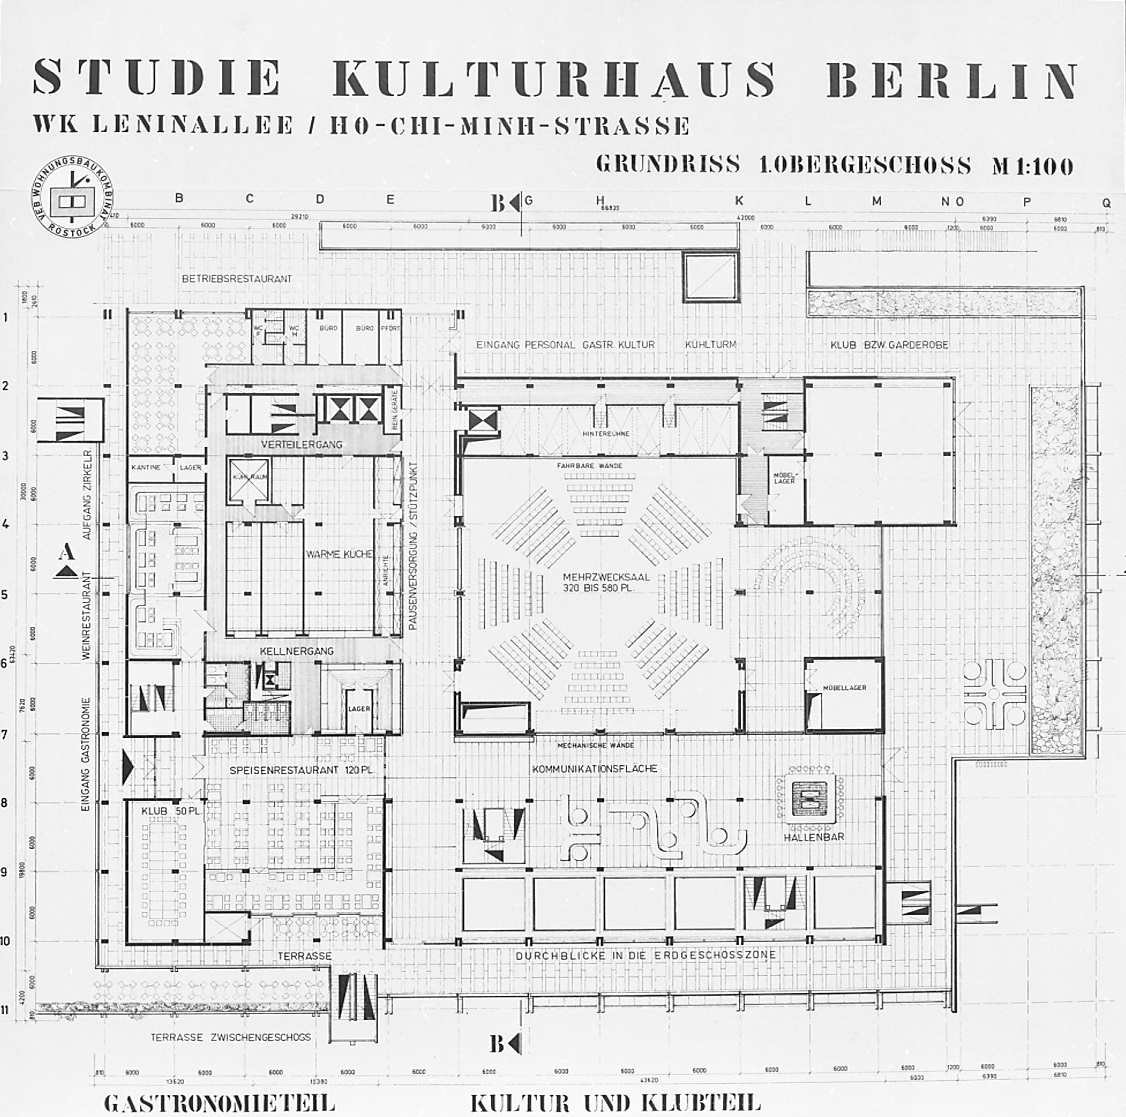 Studie Kulturhaus Berlin